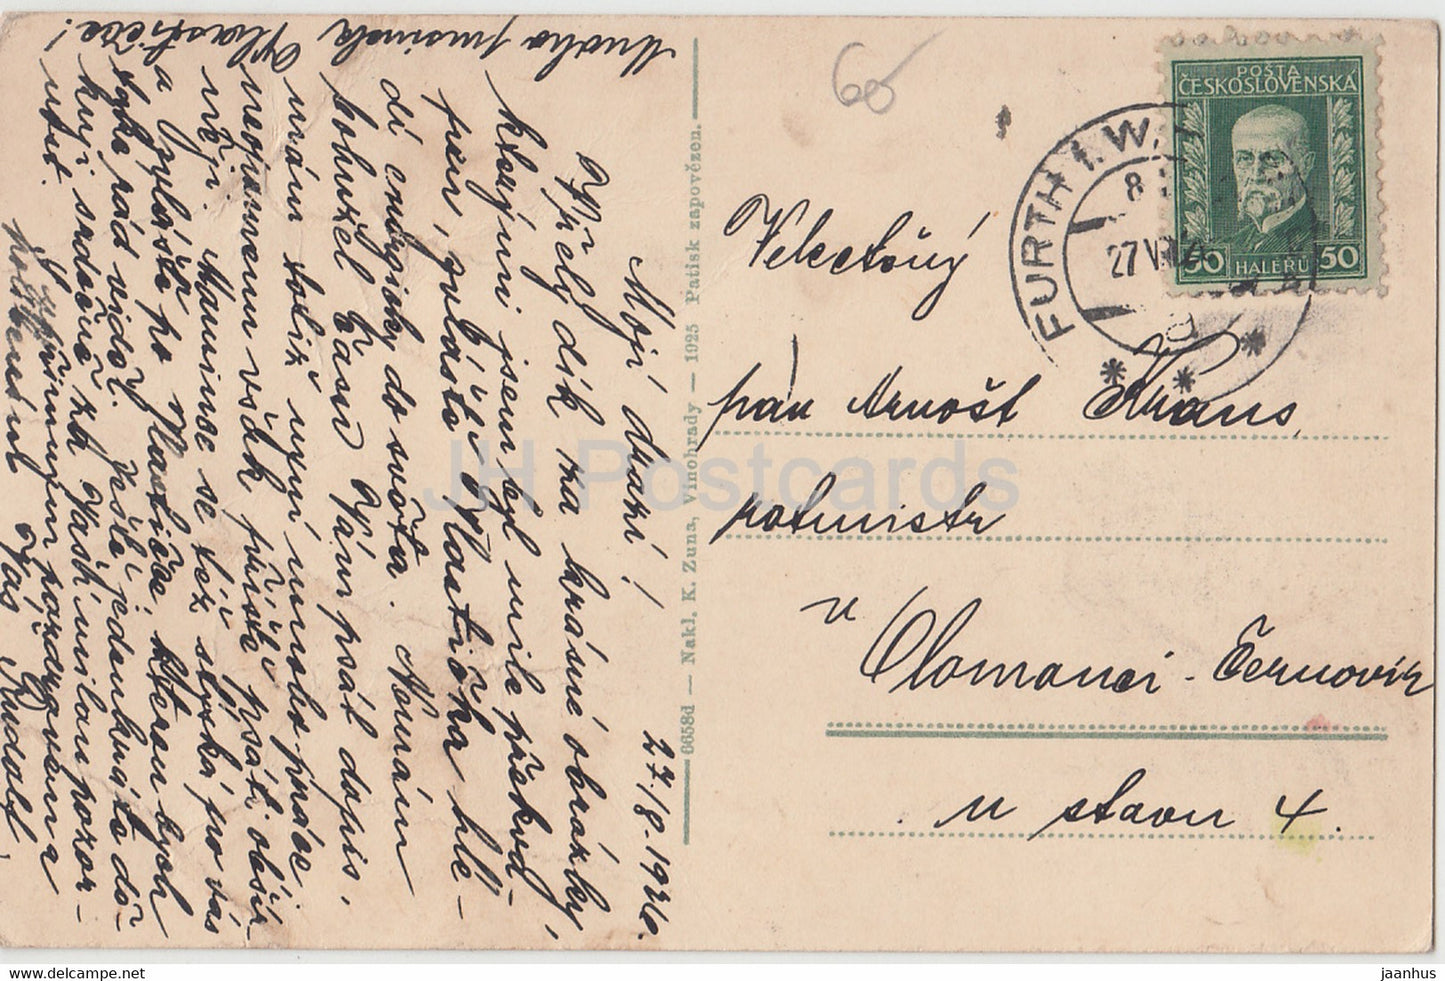 Horovice - carte postale ancienne - 1936 - République tchèque - Tchécoslovaquie - utilisé